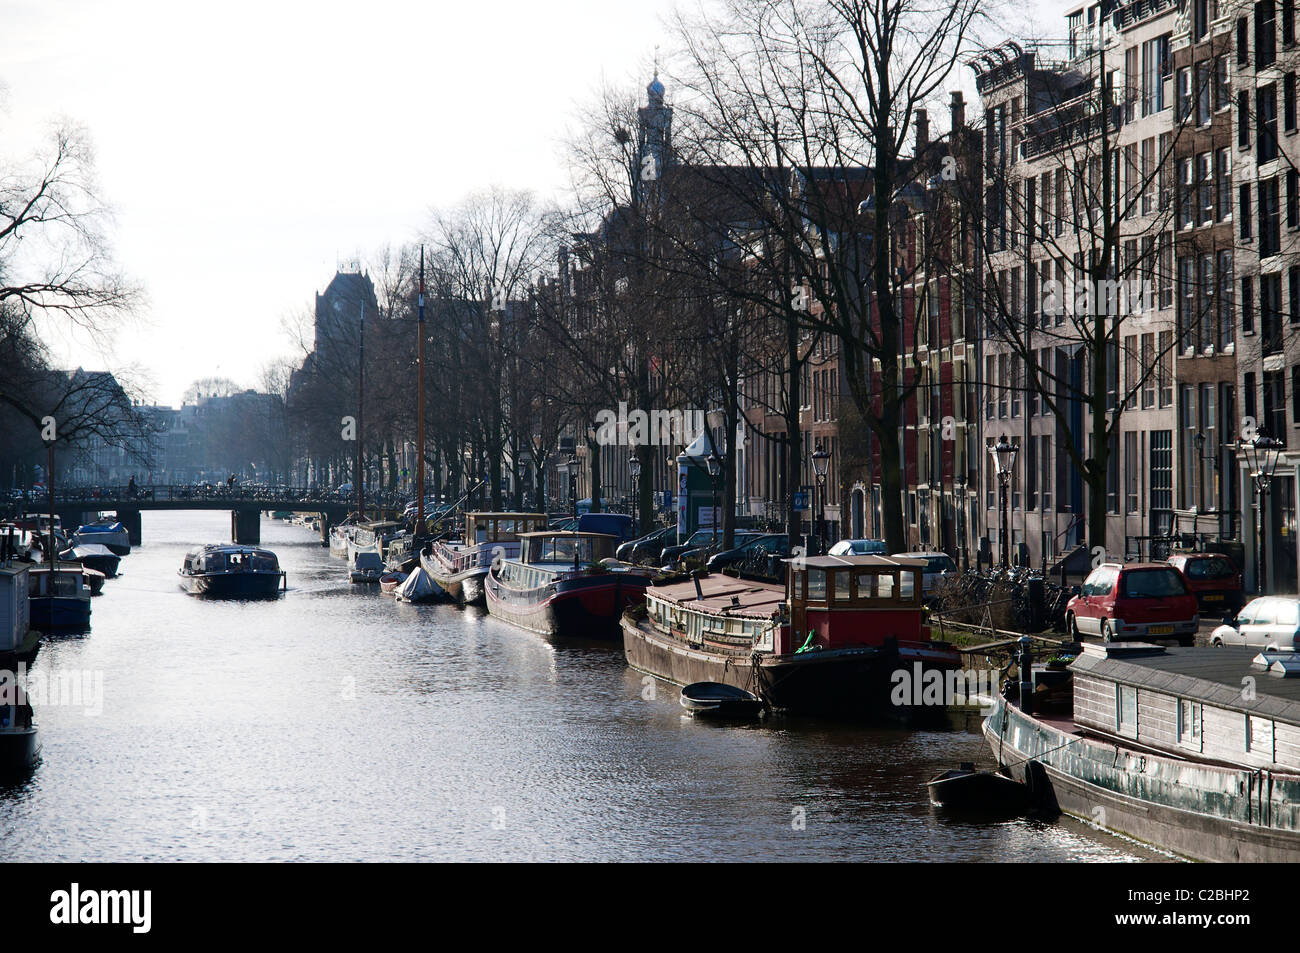 Canal nel quartiere Jordaan con case galleggianti e canal tour in barca in inverno. Foto Stock